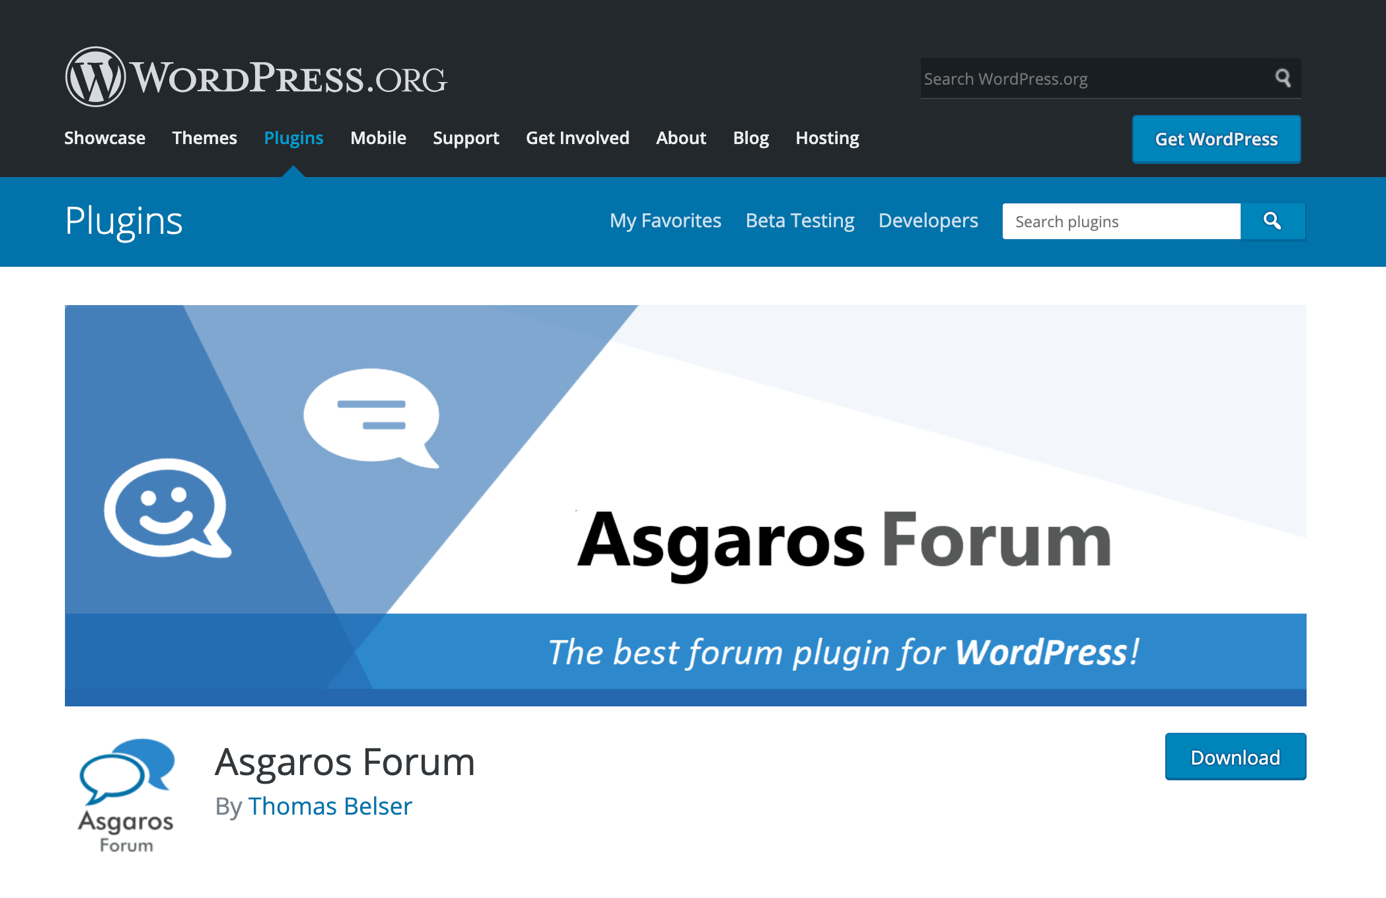 Download-Seite des Asgaros-Forums auf WordPress.org